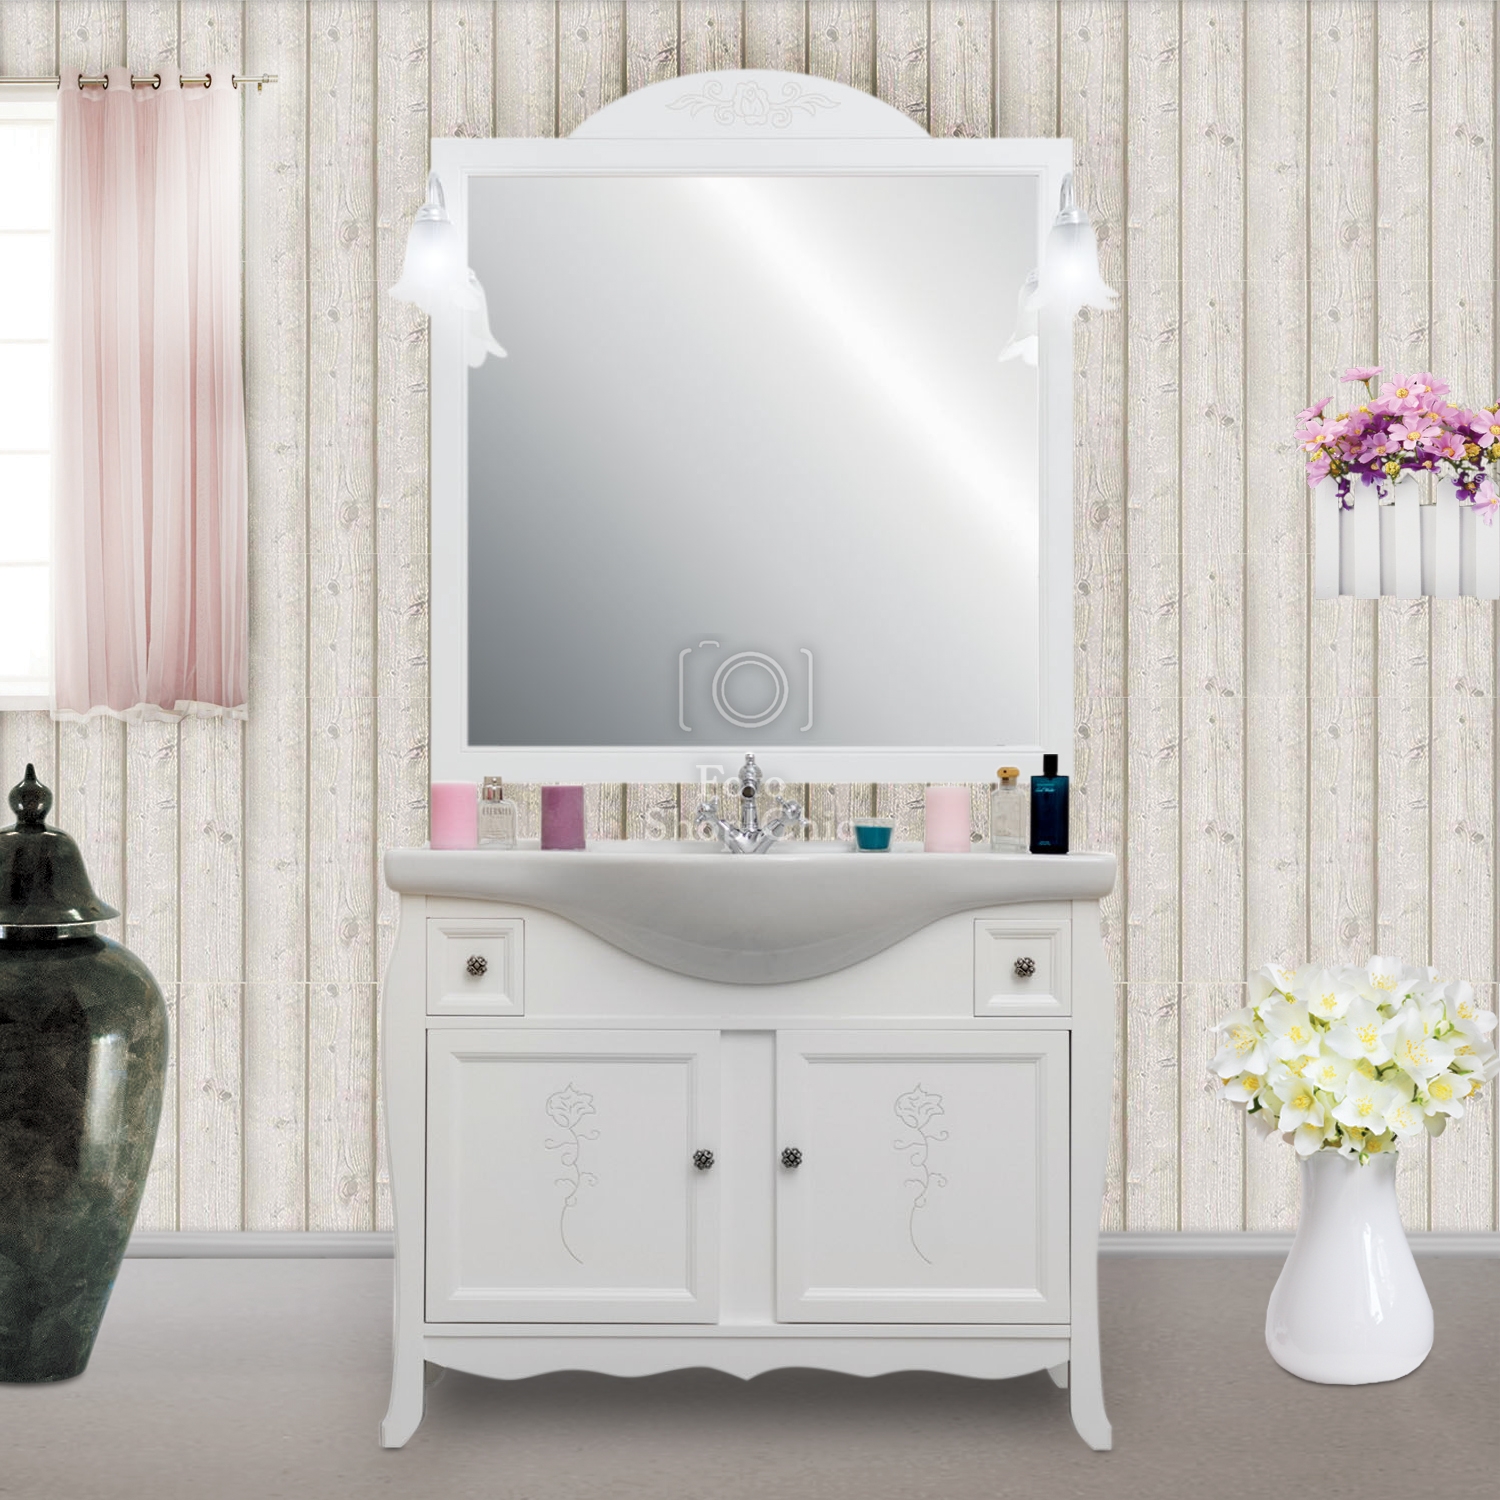 Mobile bagno shabby chic con decori incisi completo di specchio e applique  - Le Chic Arredamenti